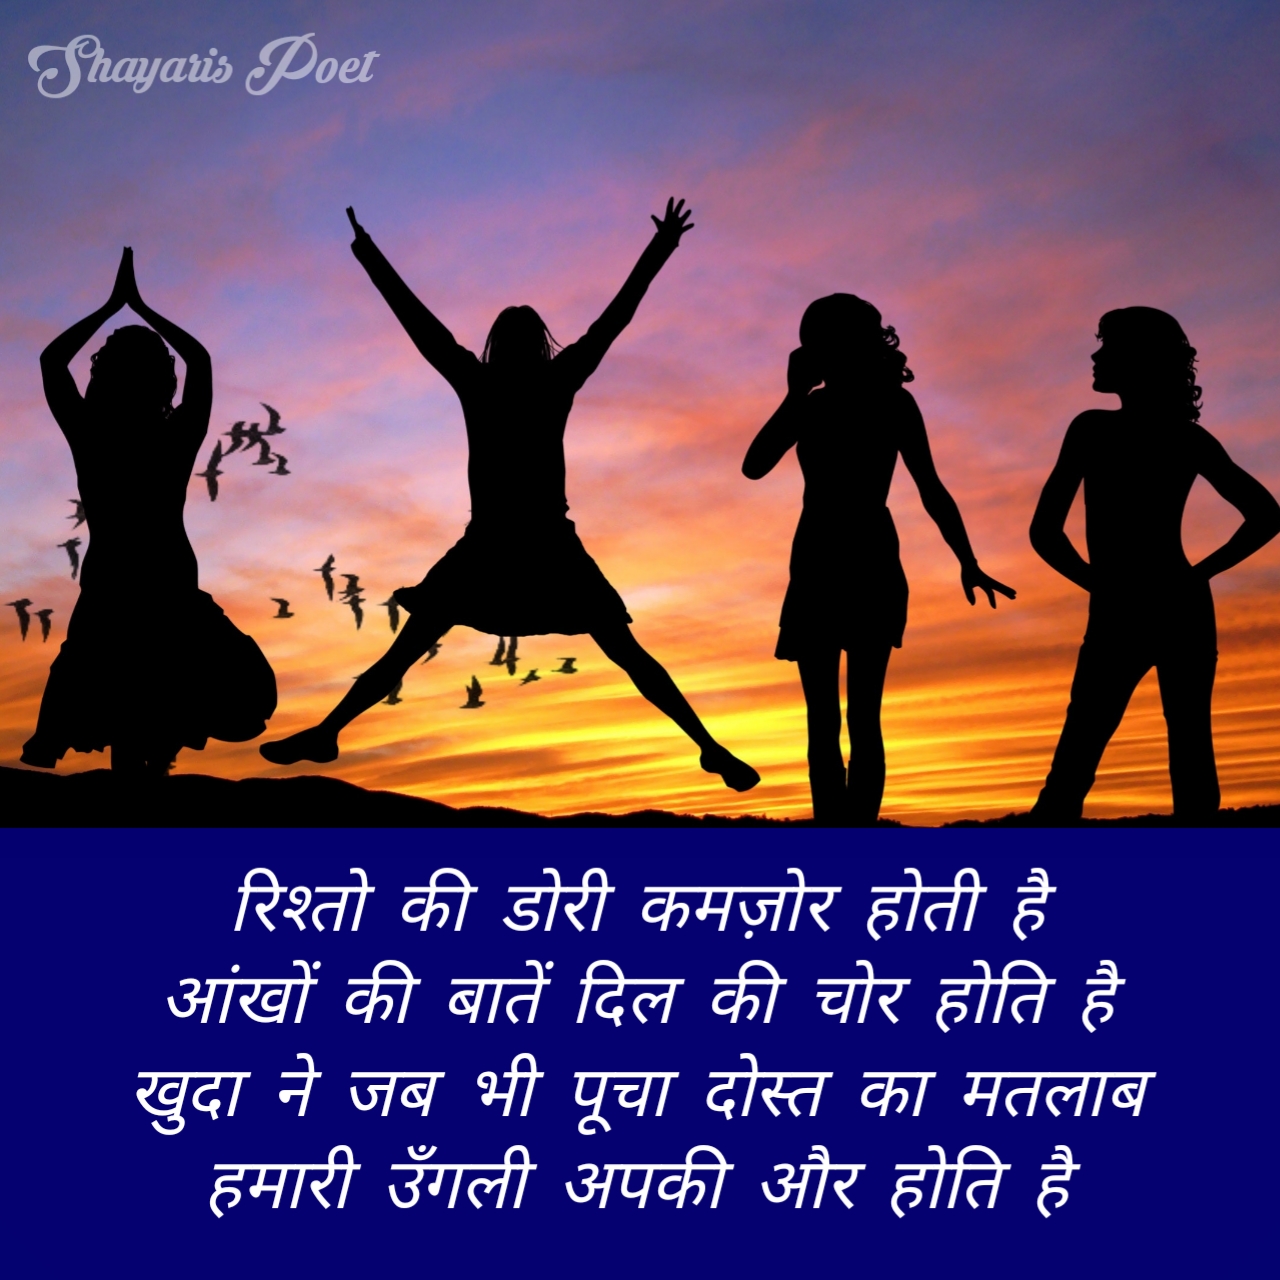 Friendship, Friendship Shayari, Friendship Day Shayari In Hindi